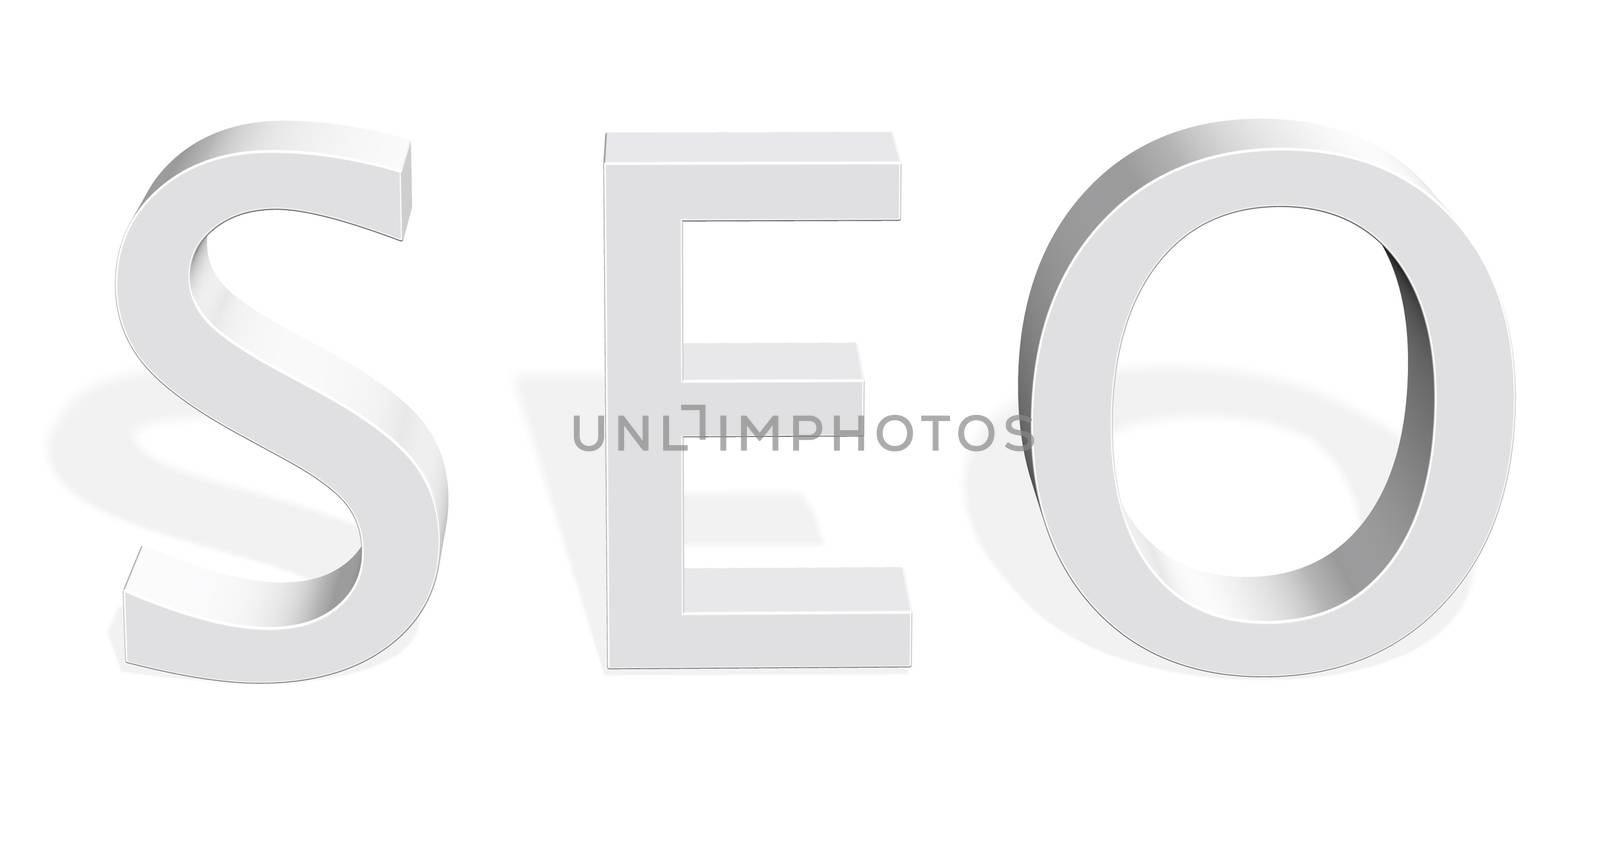 Conceptual element logo idea - company brand identity graphic